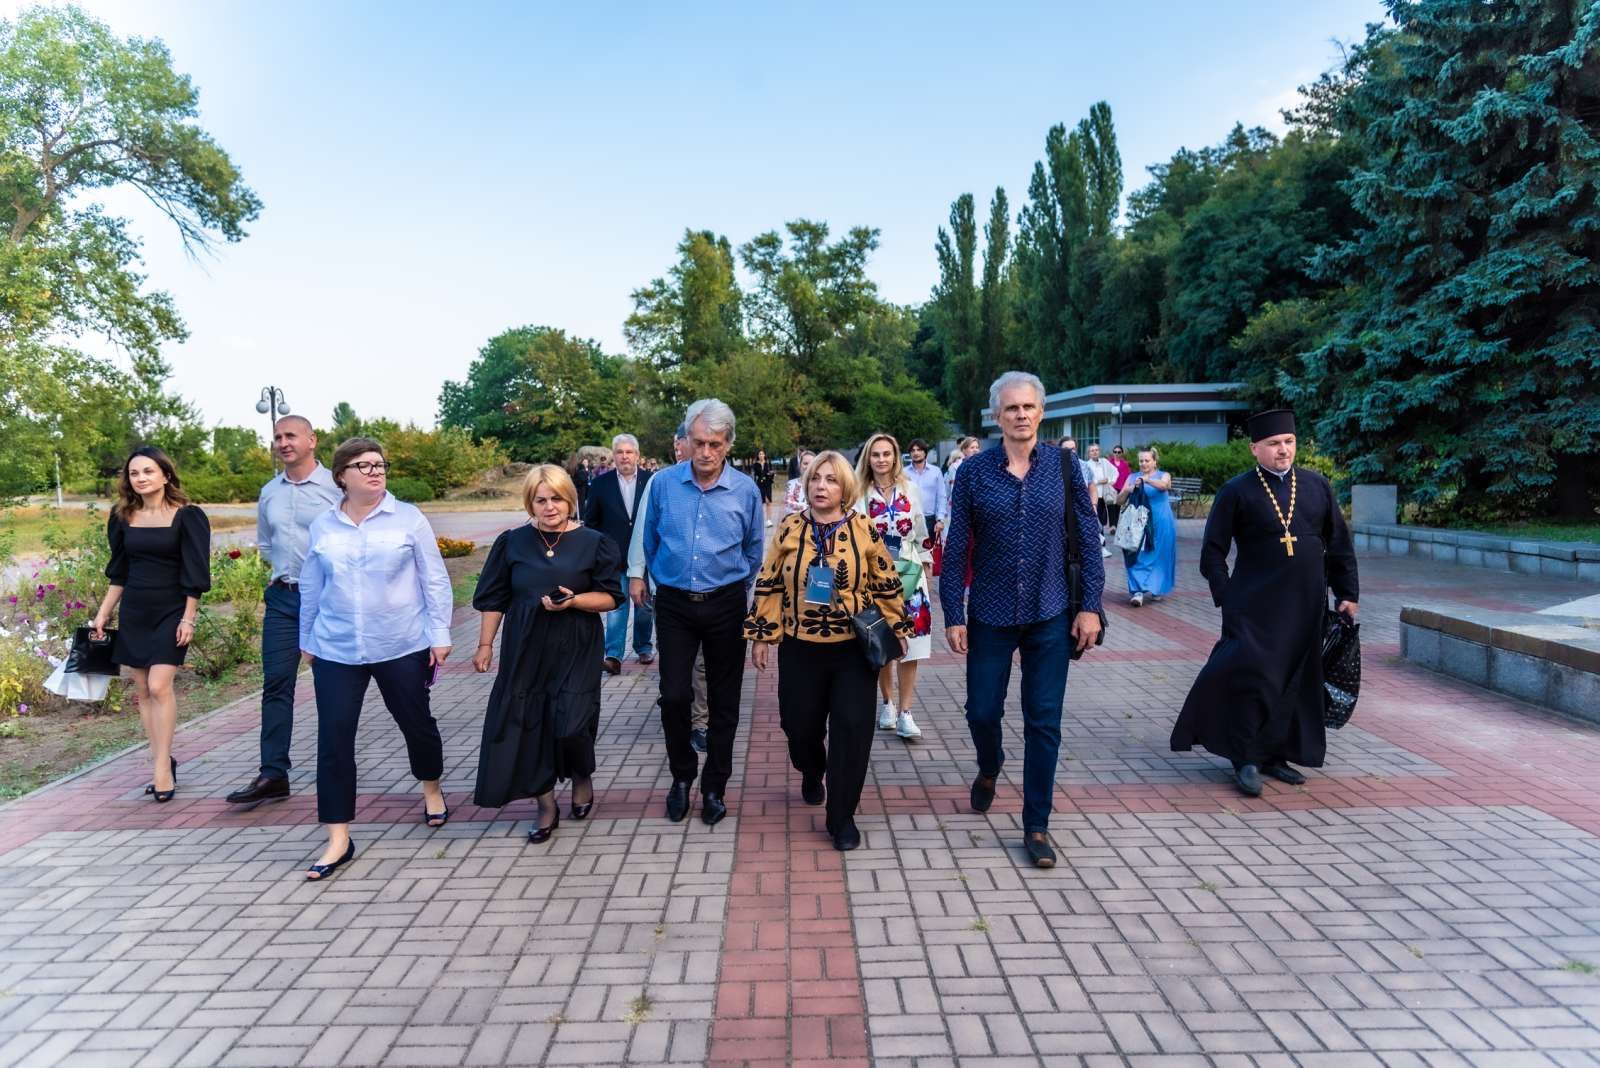 Учасники Світового конгресу українців разом з президентським подружжям  Ющенків прямують до Кобзаря.